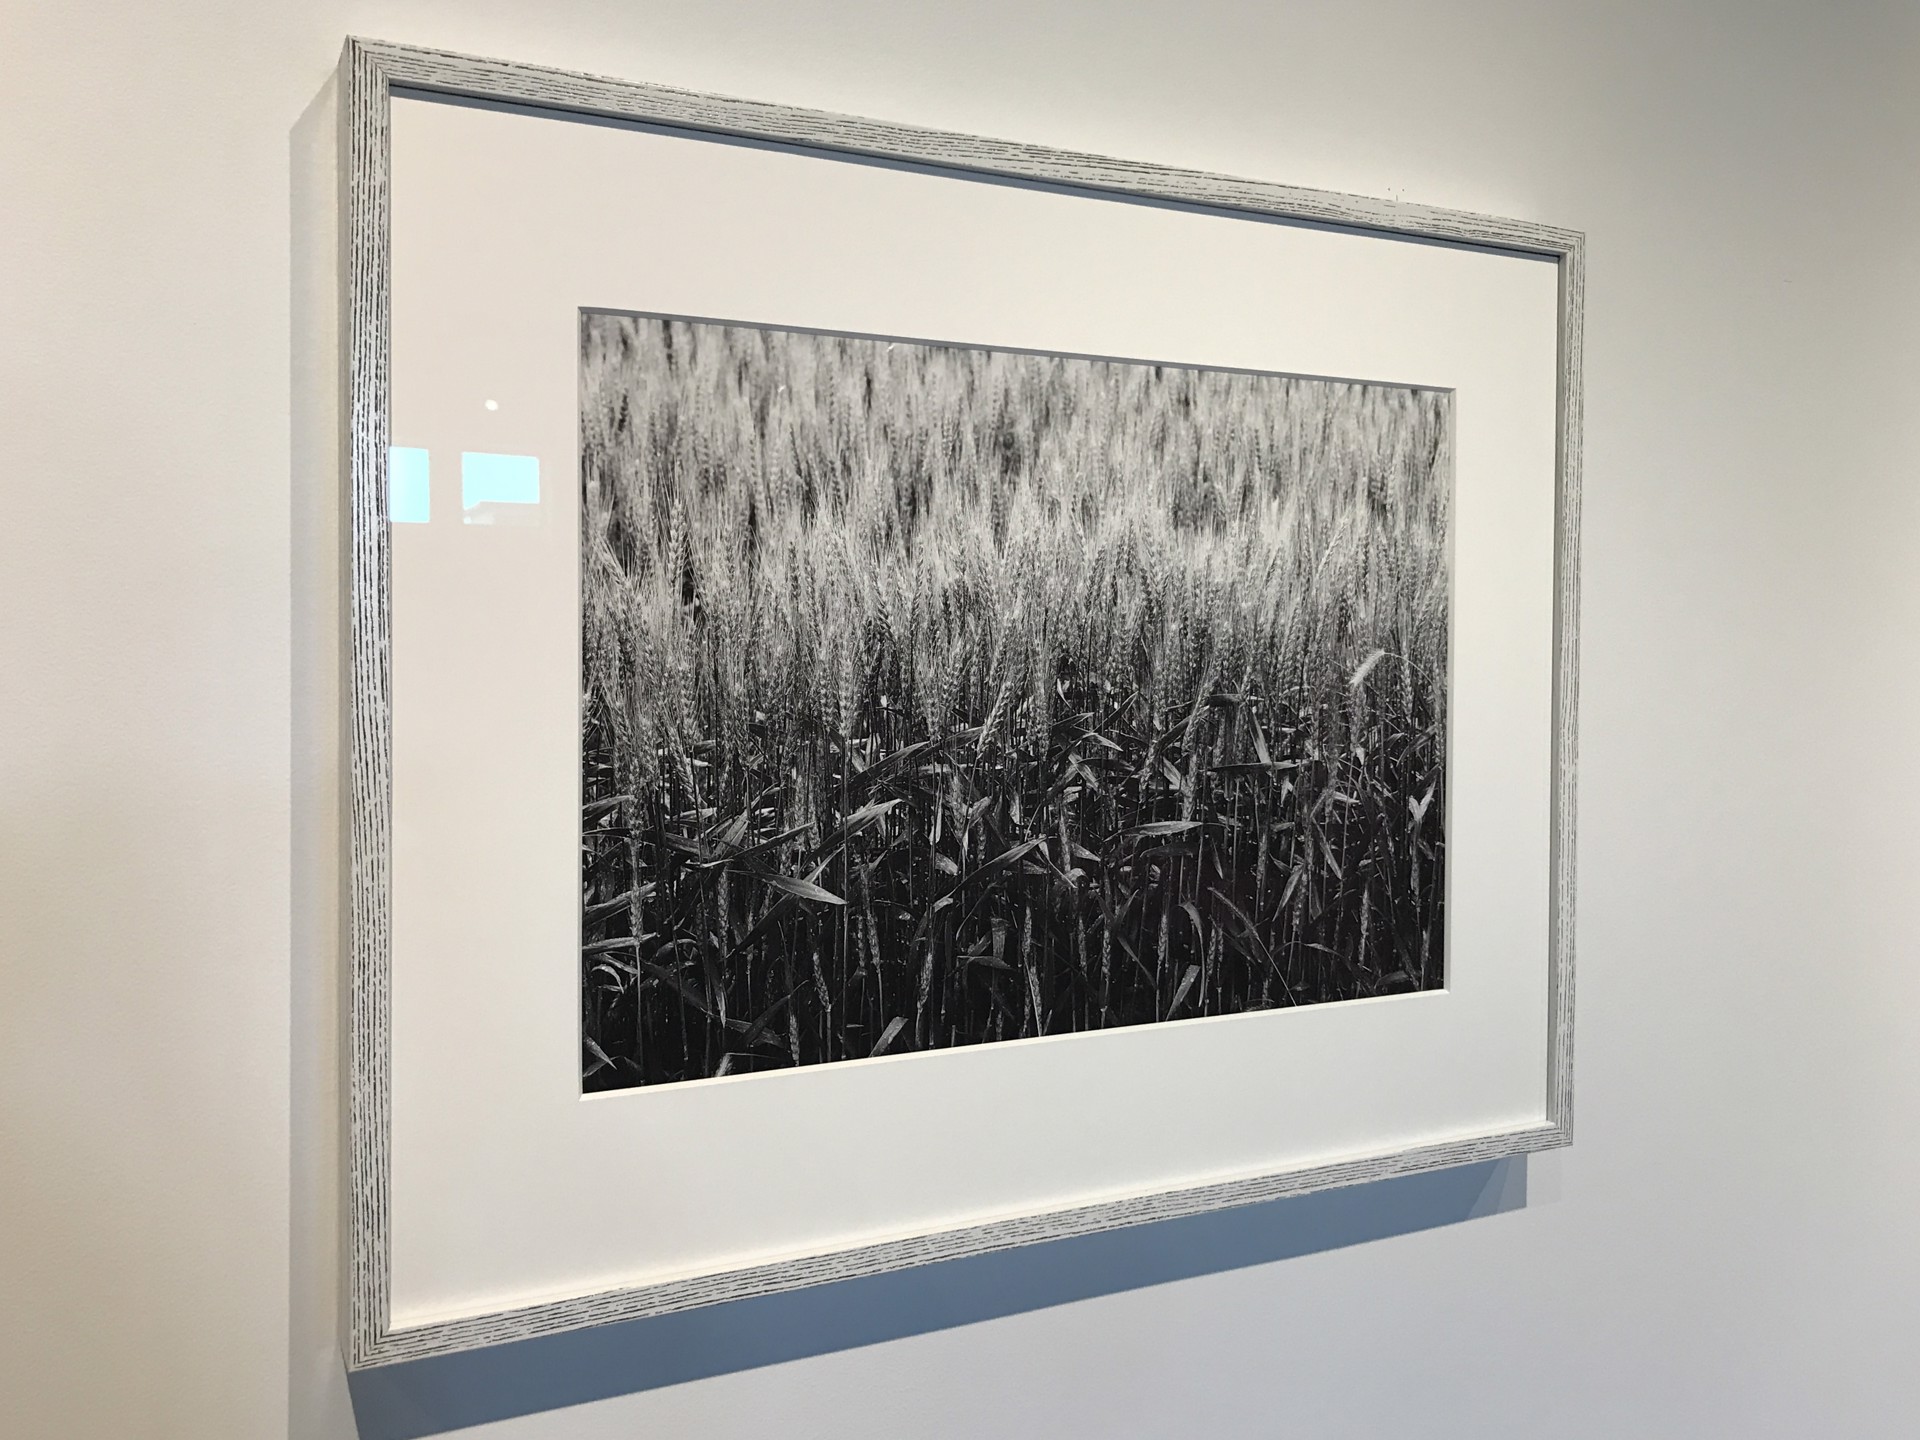 Winter Wheat by John P. Moench